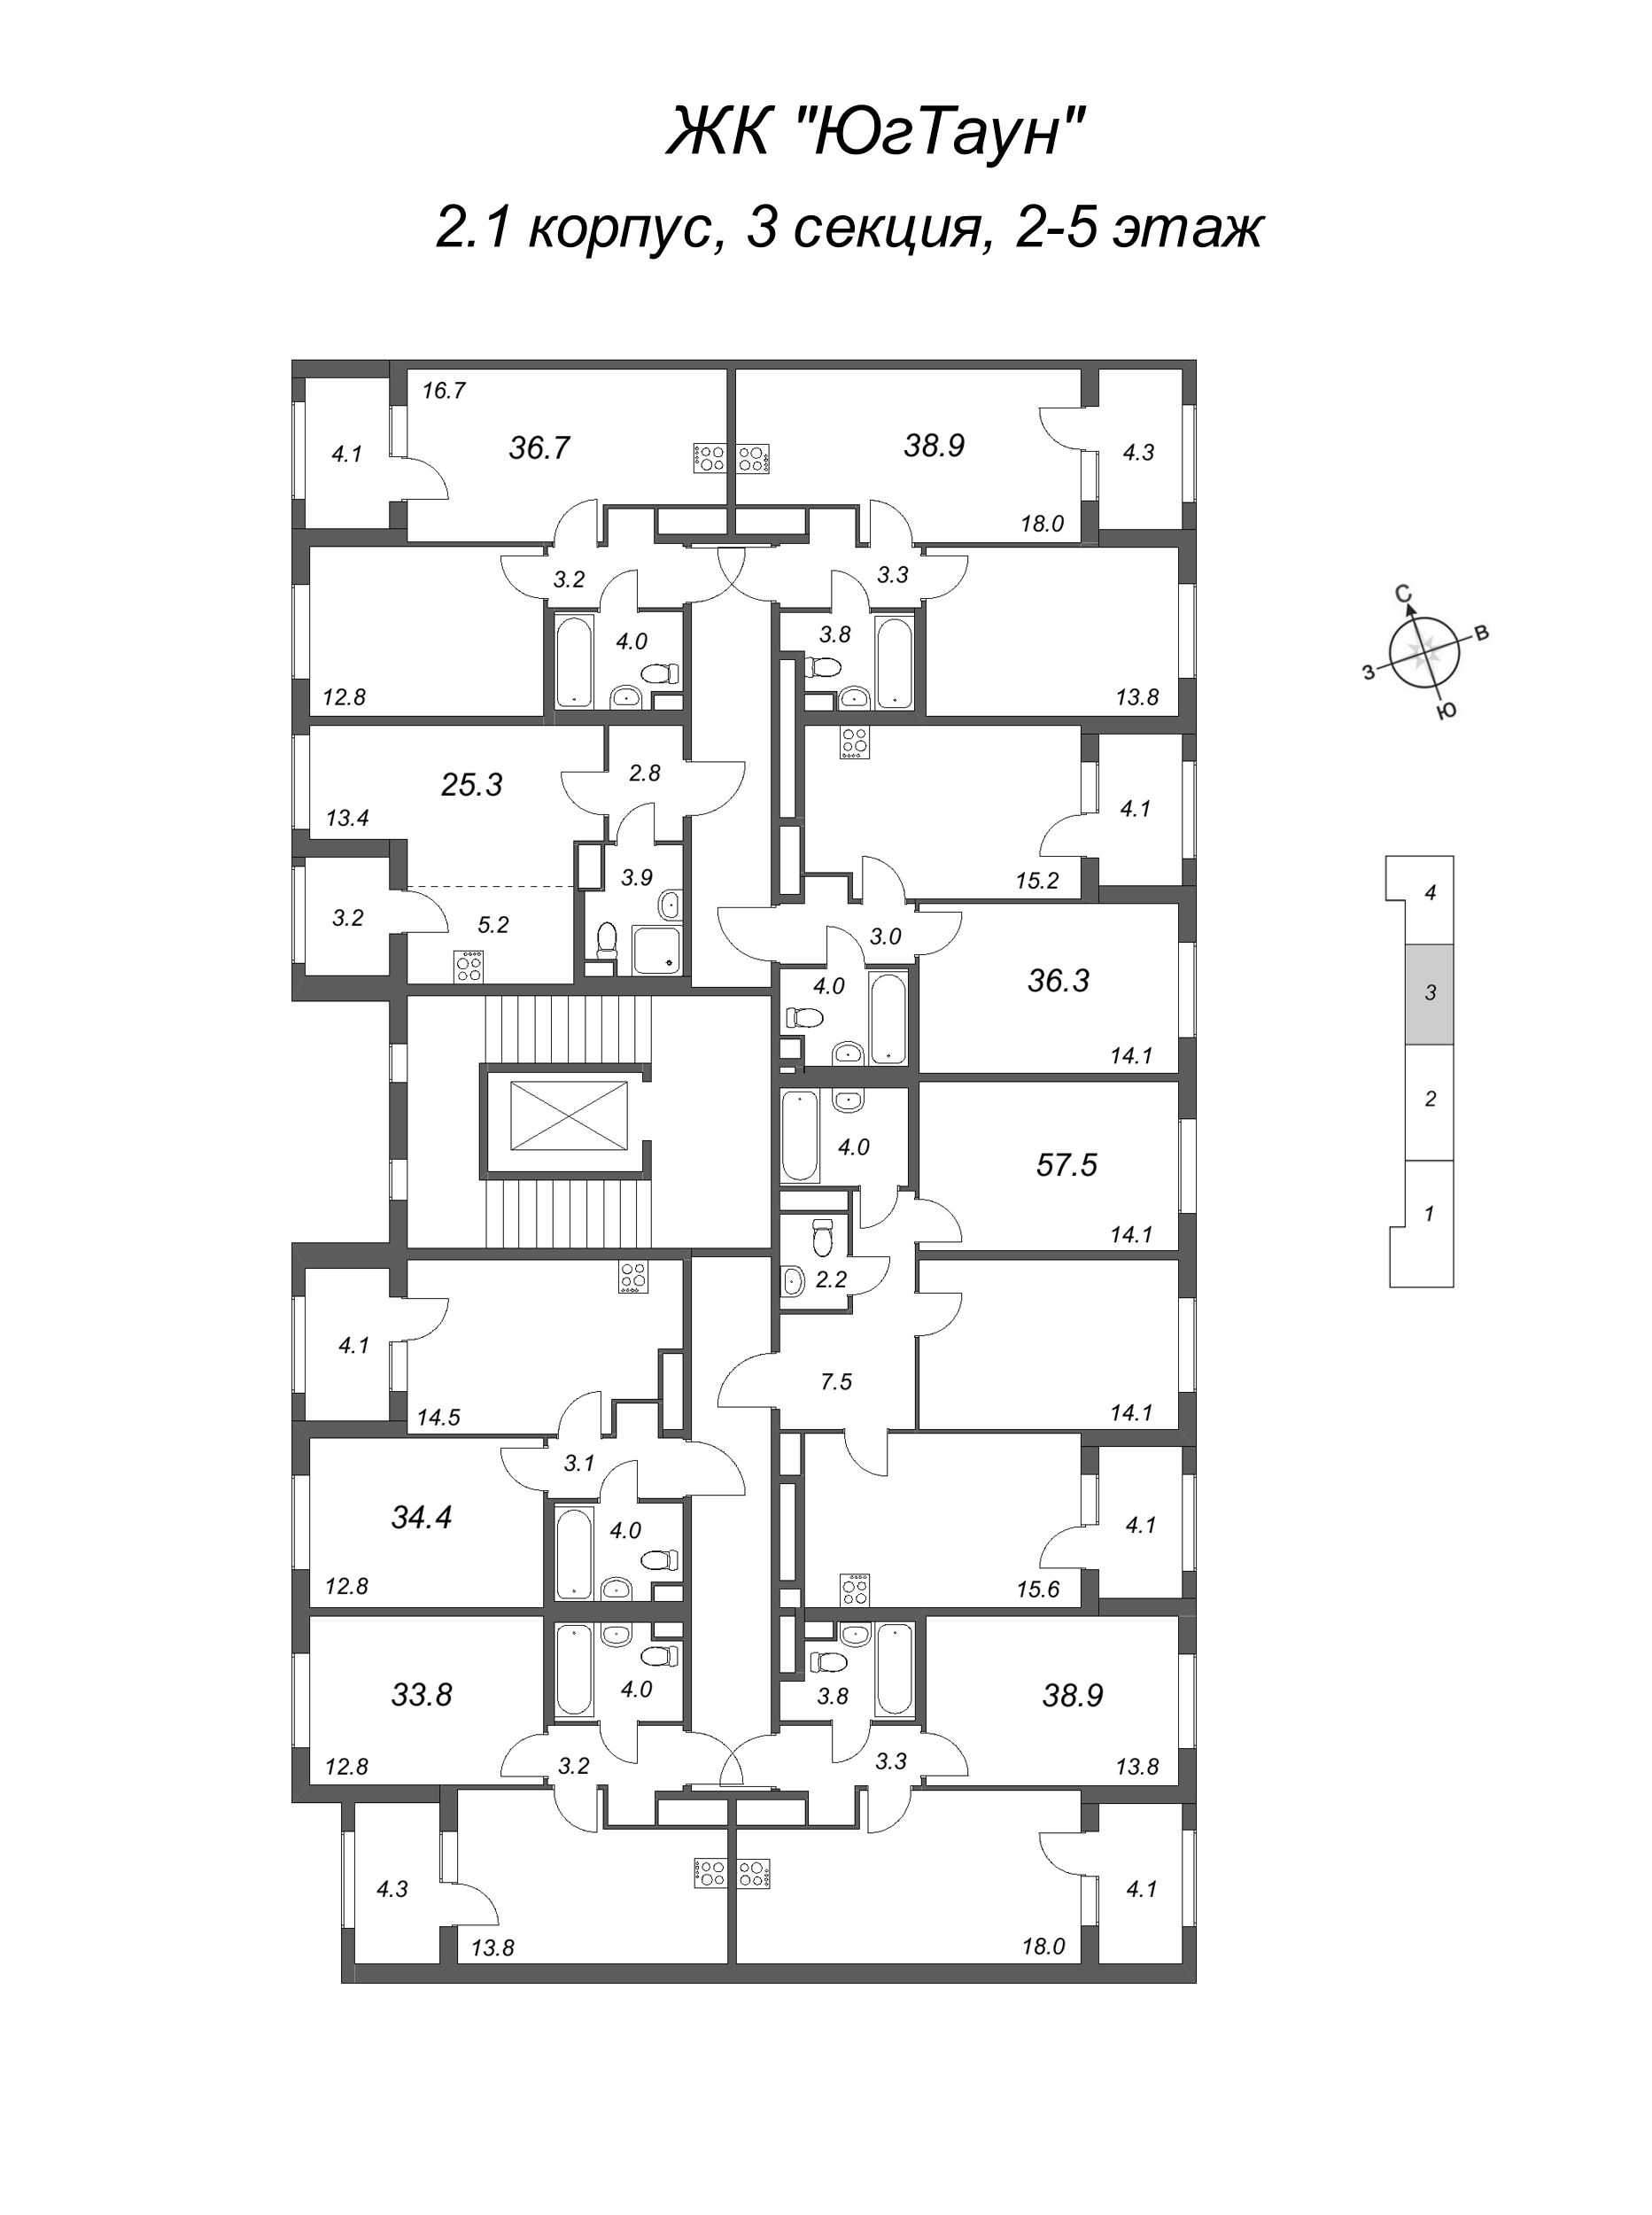 1-комнатная квартира, 33.8 м² в ЖК "ЮгТаун" - планировка этажа